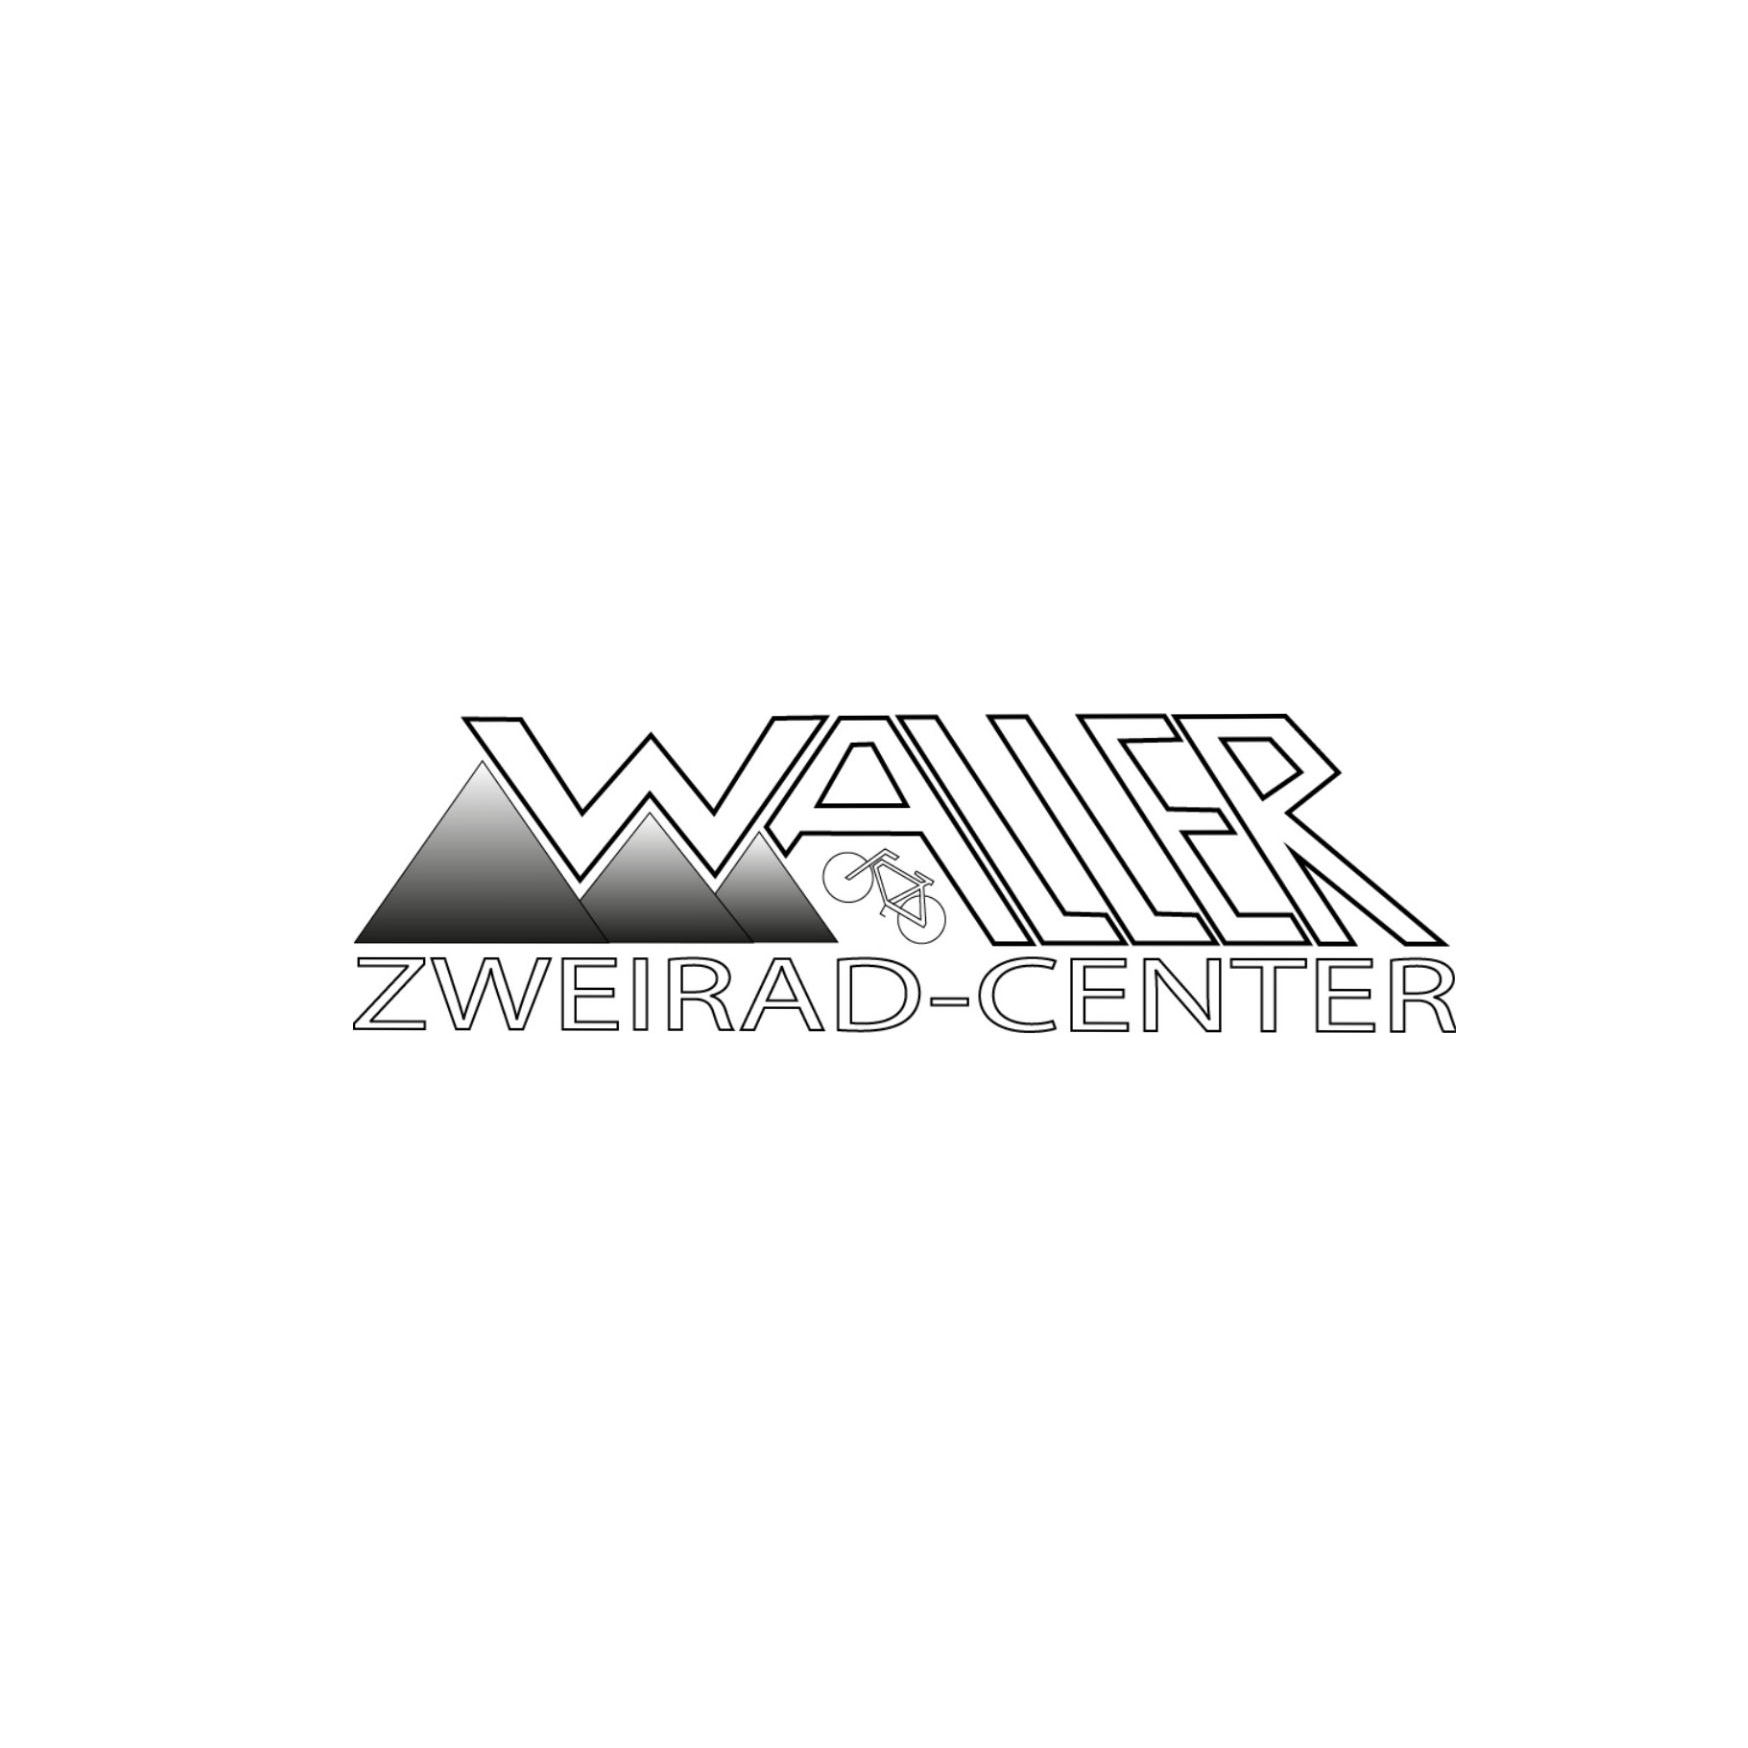 Waller Zweirad-Center